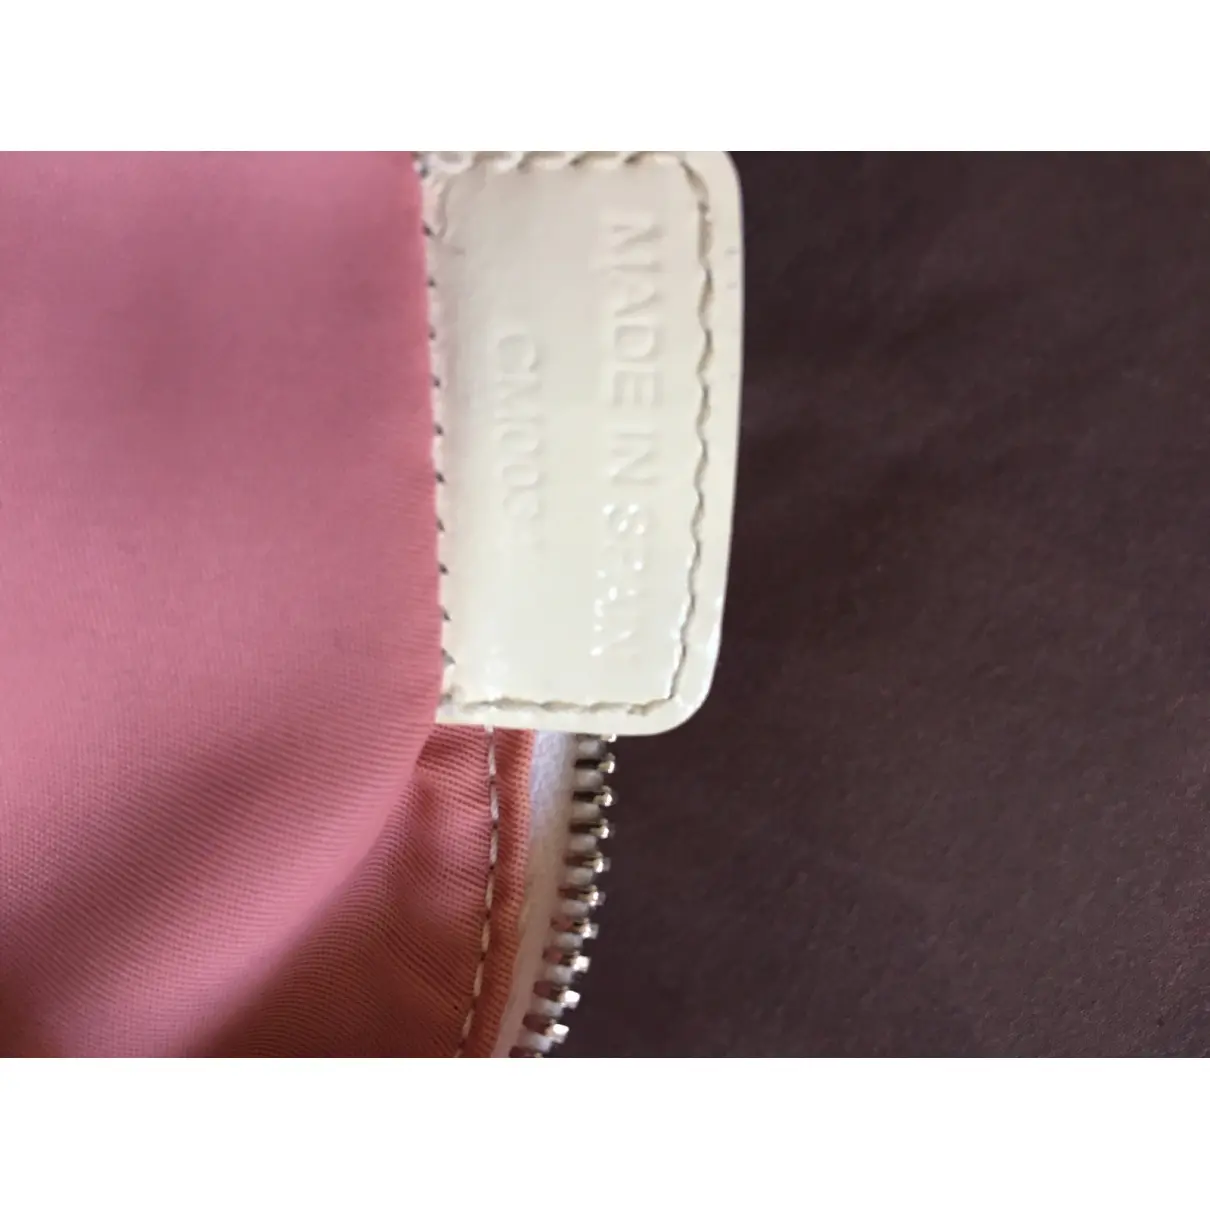 Dior Saddle vintage Classic handbag for sale - Vintage